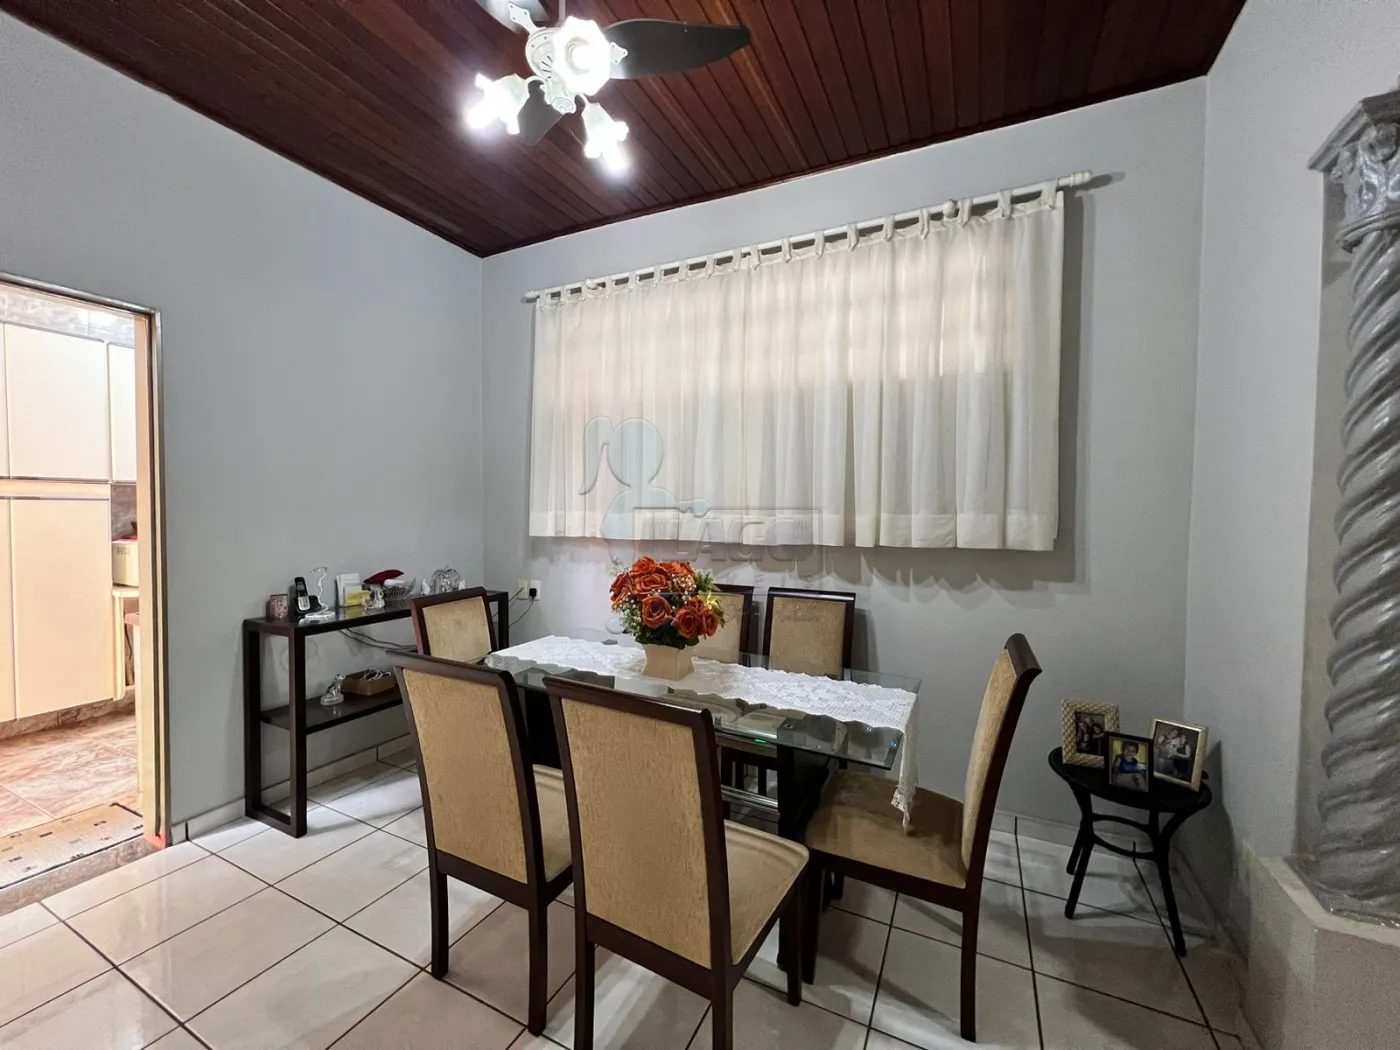 Comprar Casas / Padrão em Ribeirão Preto R$ 480.000,00 - Foto 5